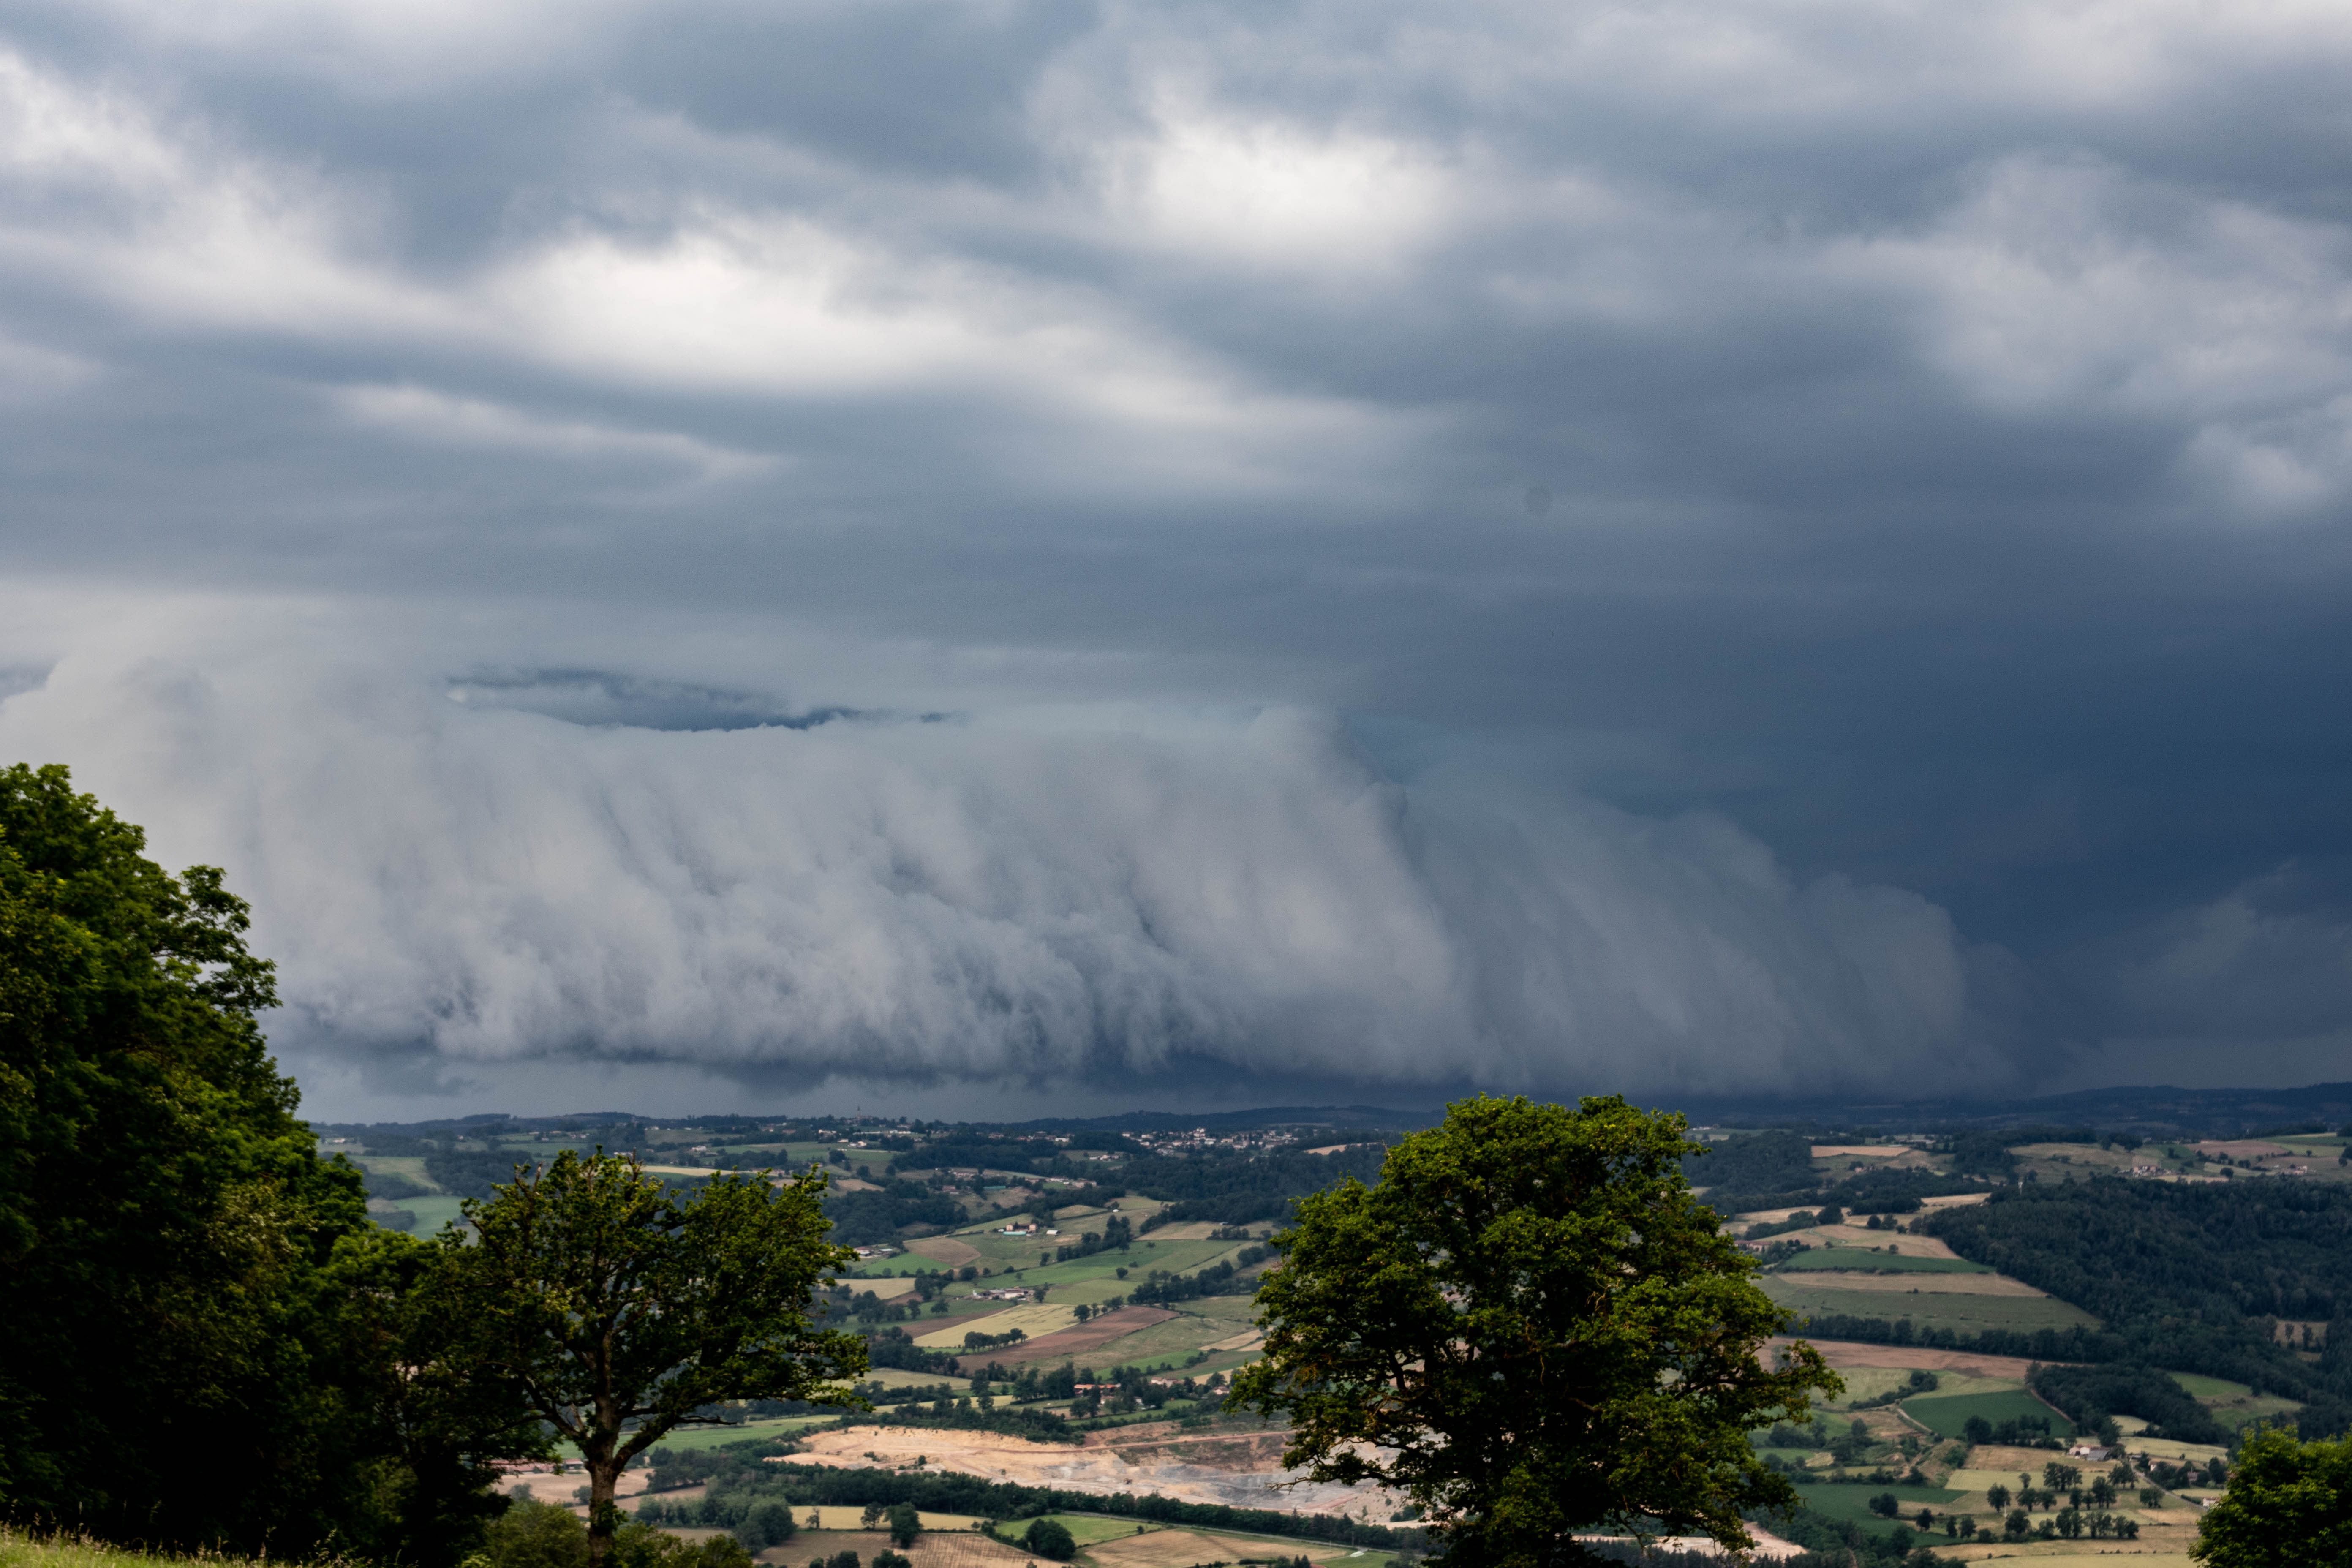 Photo prise de la commune de Aveize , orage ayant touché le beaujolais - 27/06/2021 17:35 - Prescillia Corcione